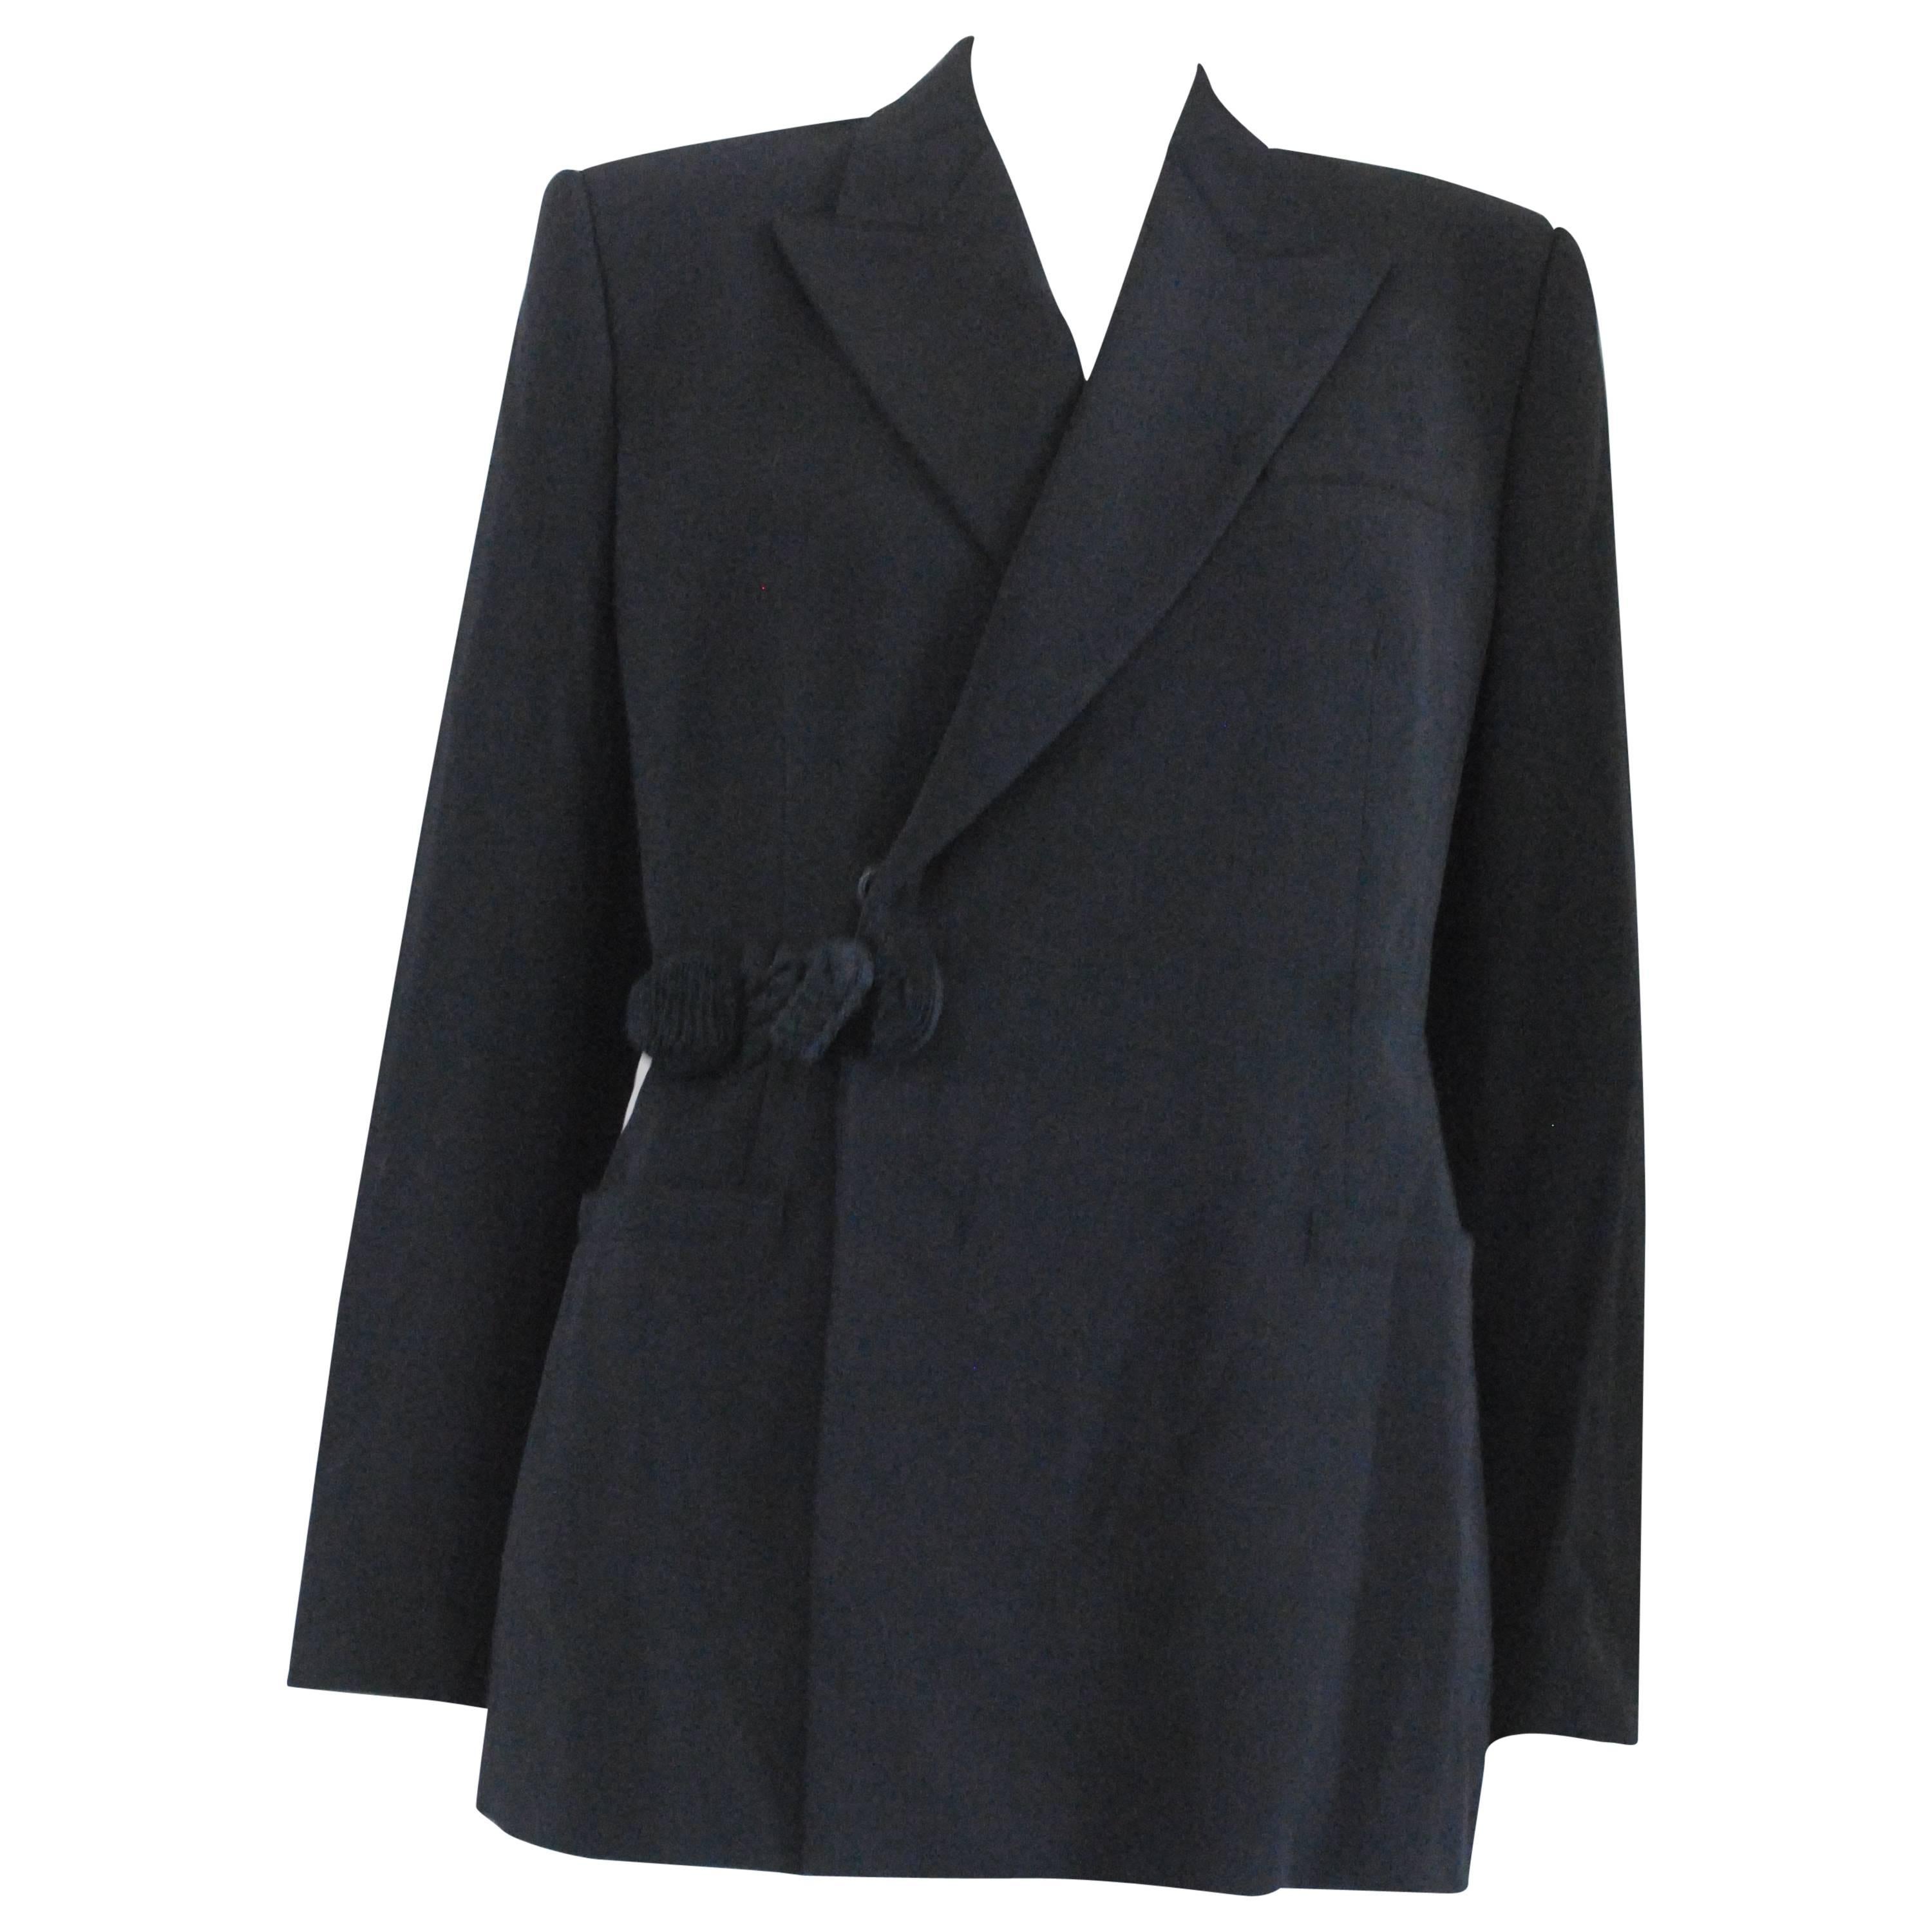 1997 - 1998 Rare Jean Paul Gaultier Black Wool Jacket For Sale